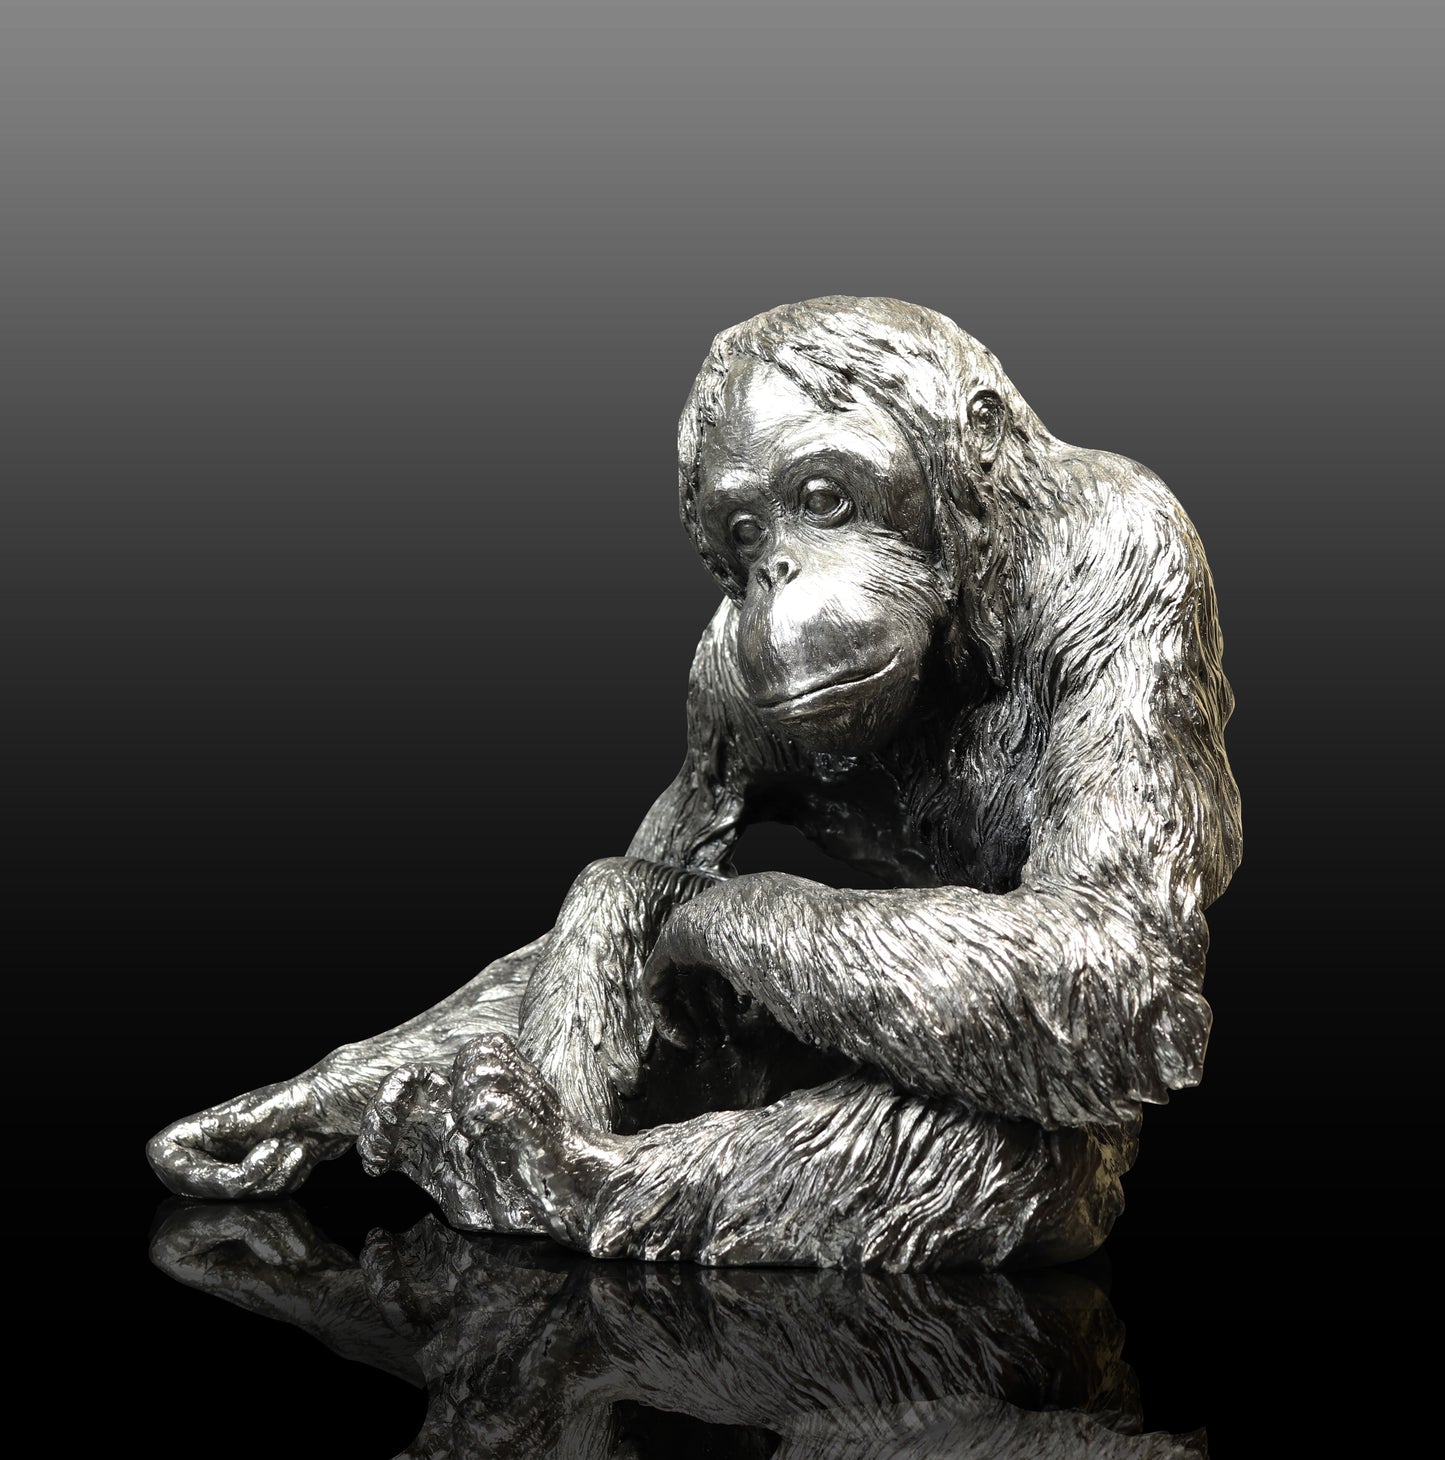 Orangutan Nickel Sculpture by Keith Sherwin for Richard Cooper Studio